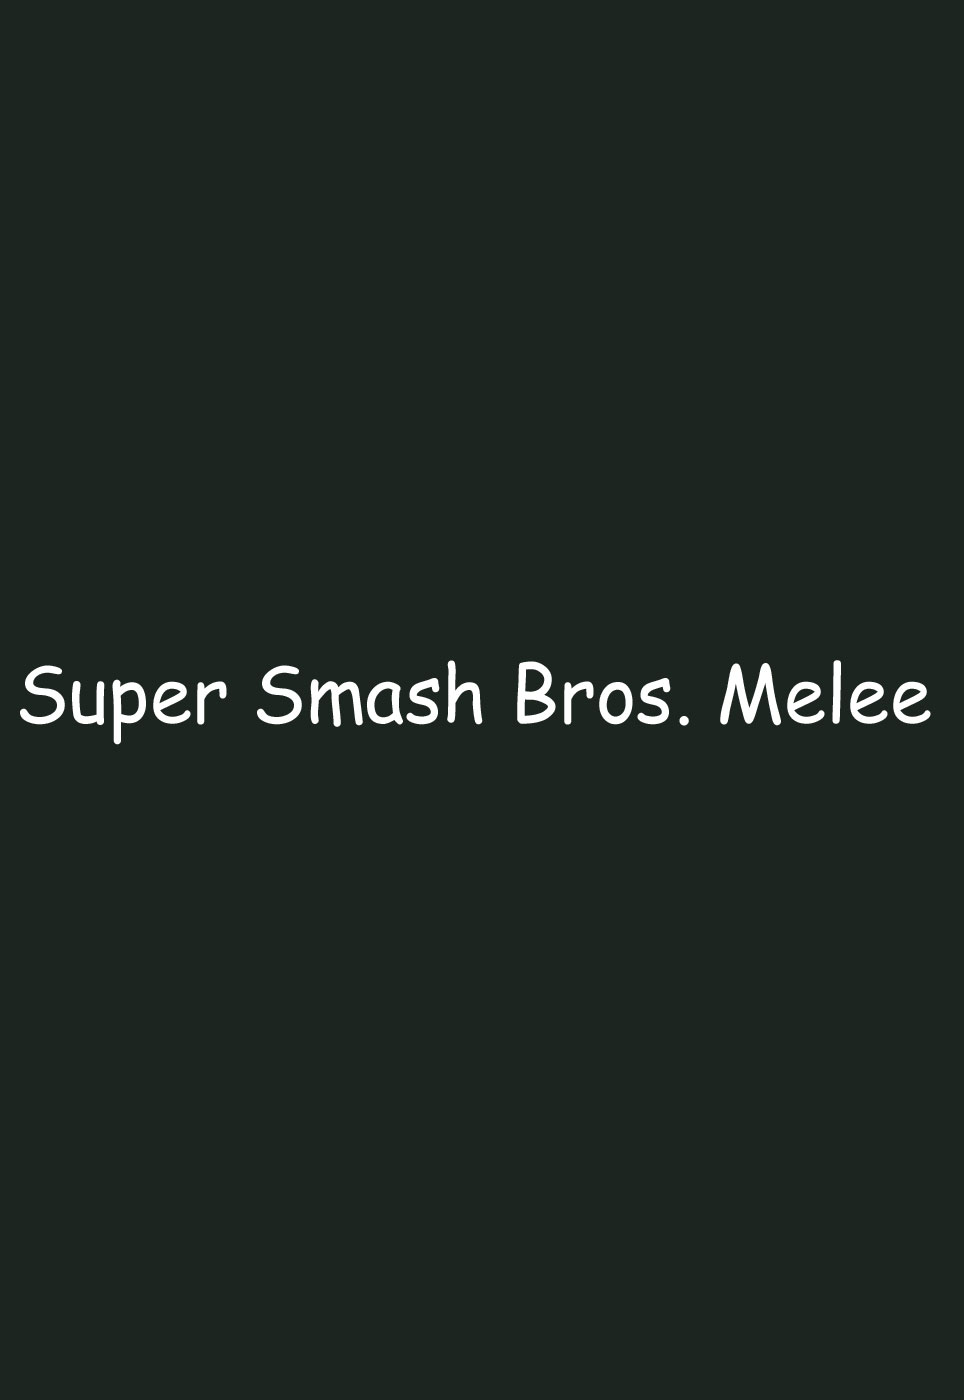 [EHT] Super Smash Bros. Melee - Double Princesses (+ Extras) v2.0 